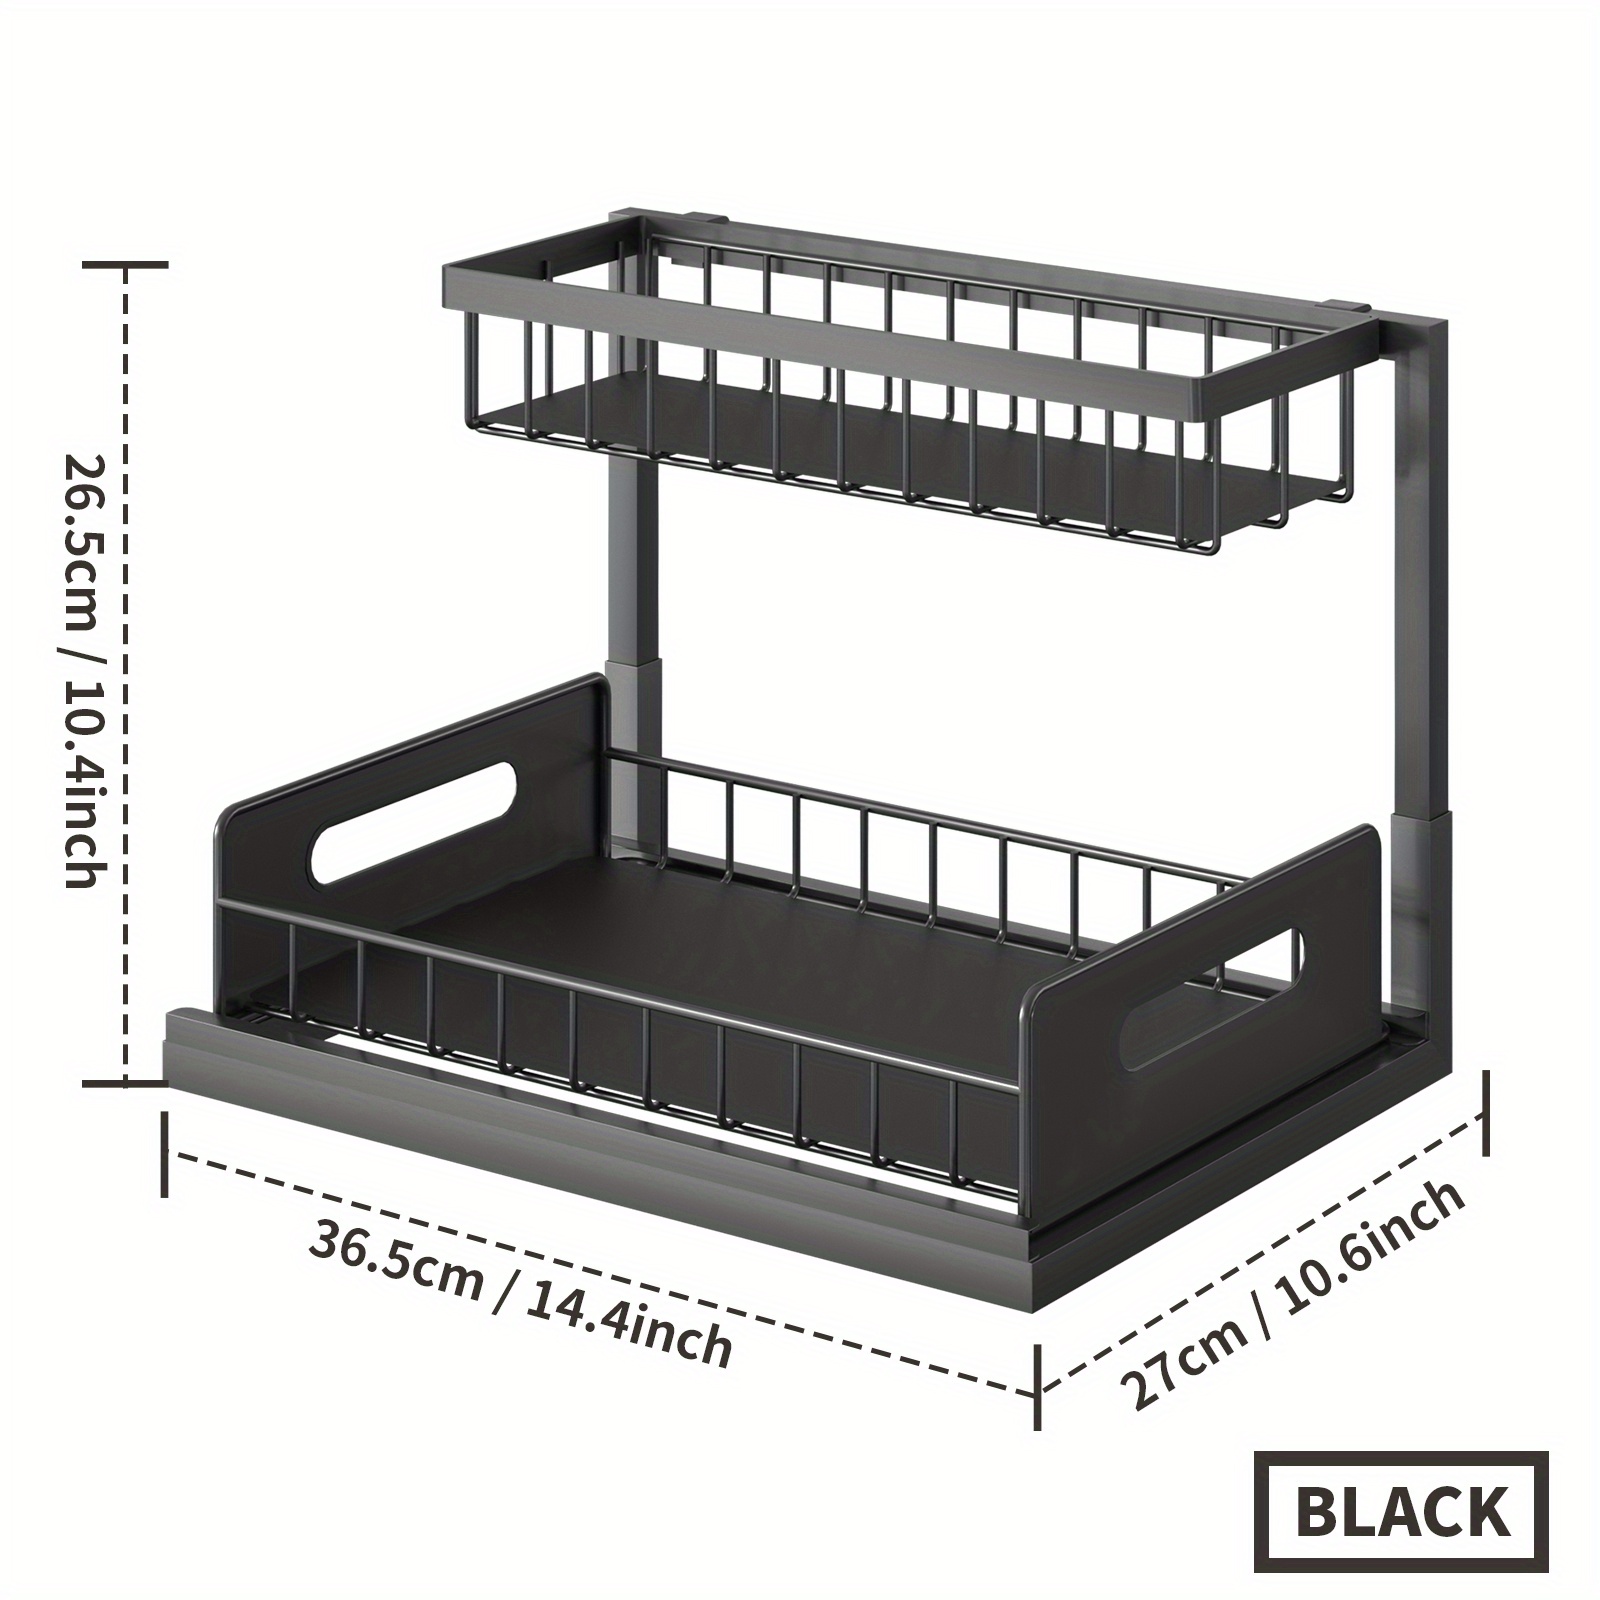 Ryhpez Under Sink Organizers and Storage, 2-Tier Cabinet Organizer Storage  with Sliding Baskets Drawer for Kitchen Bathroom (Black)